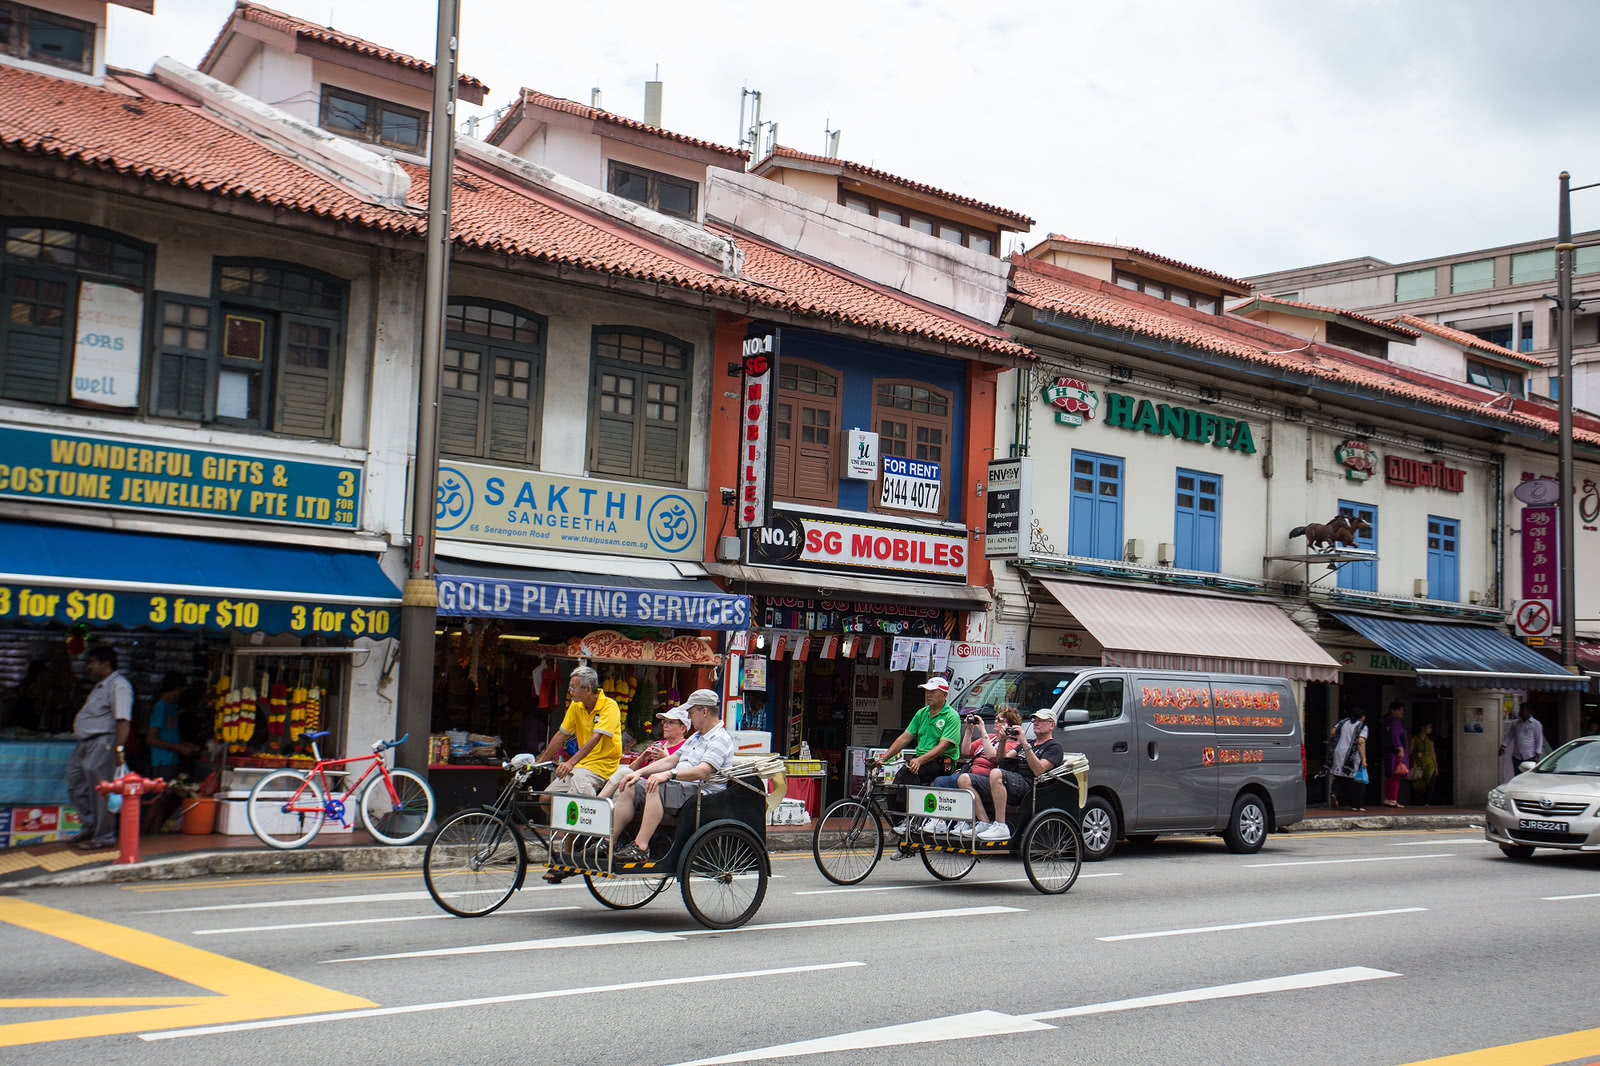 印度在新加坡的唐人街,满街咖喱味,中国游客表现不适